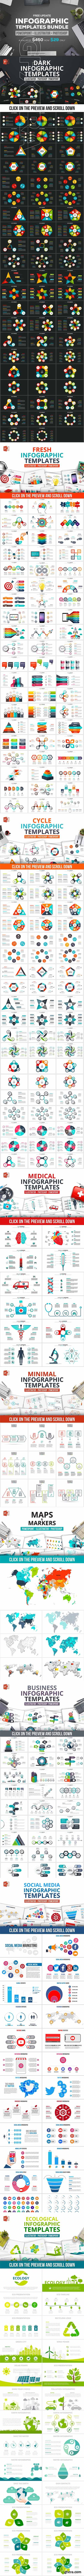 PPT infographic elements bundle